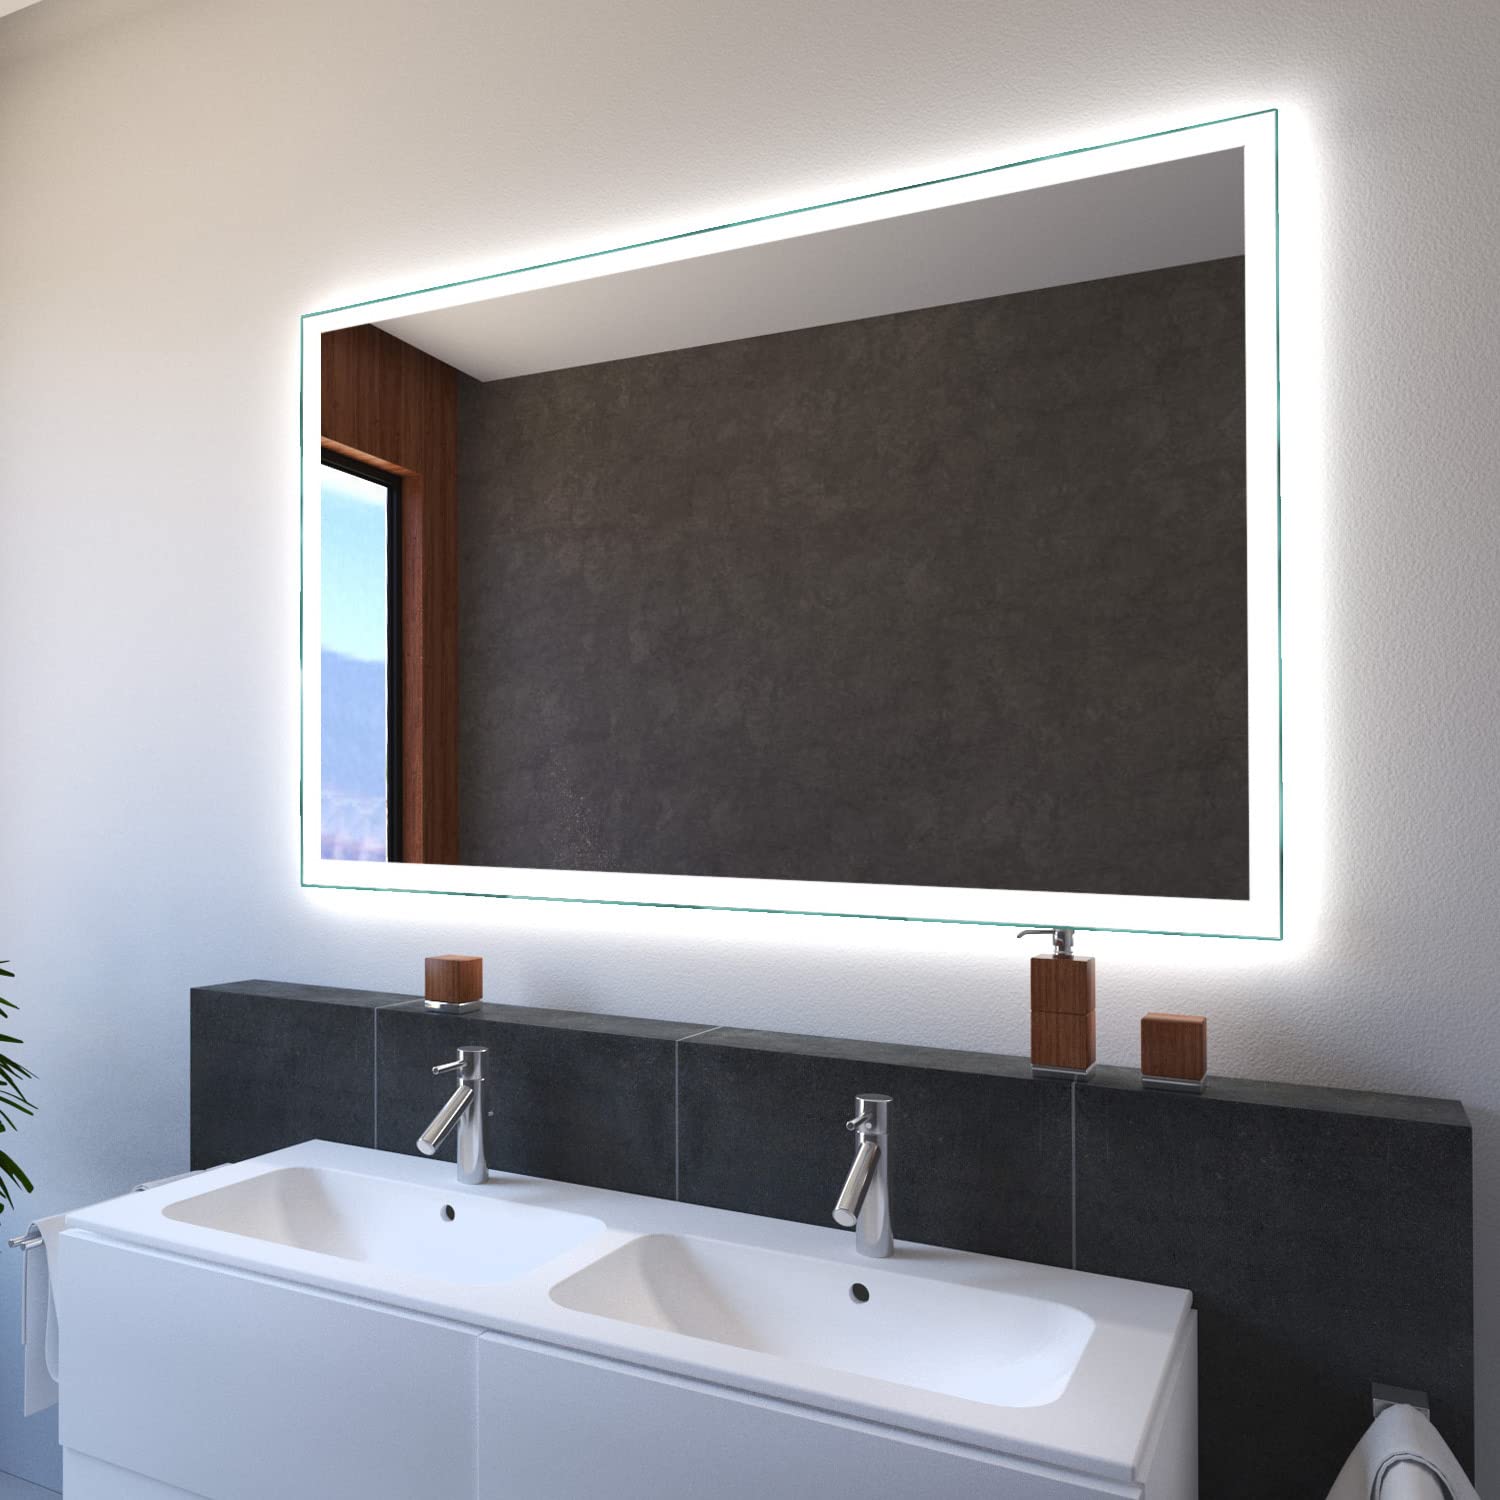 SARAR Wandspiegel mit LED-Beleuchtung 80x90cm Made in Germany Designo MA4110 Badspiegel Spiegel mit Beleuchtung Badezimmerspiegel nach-auf Maß